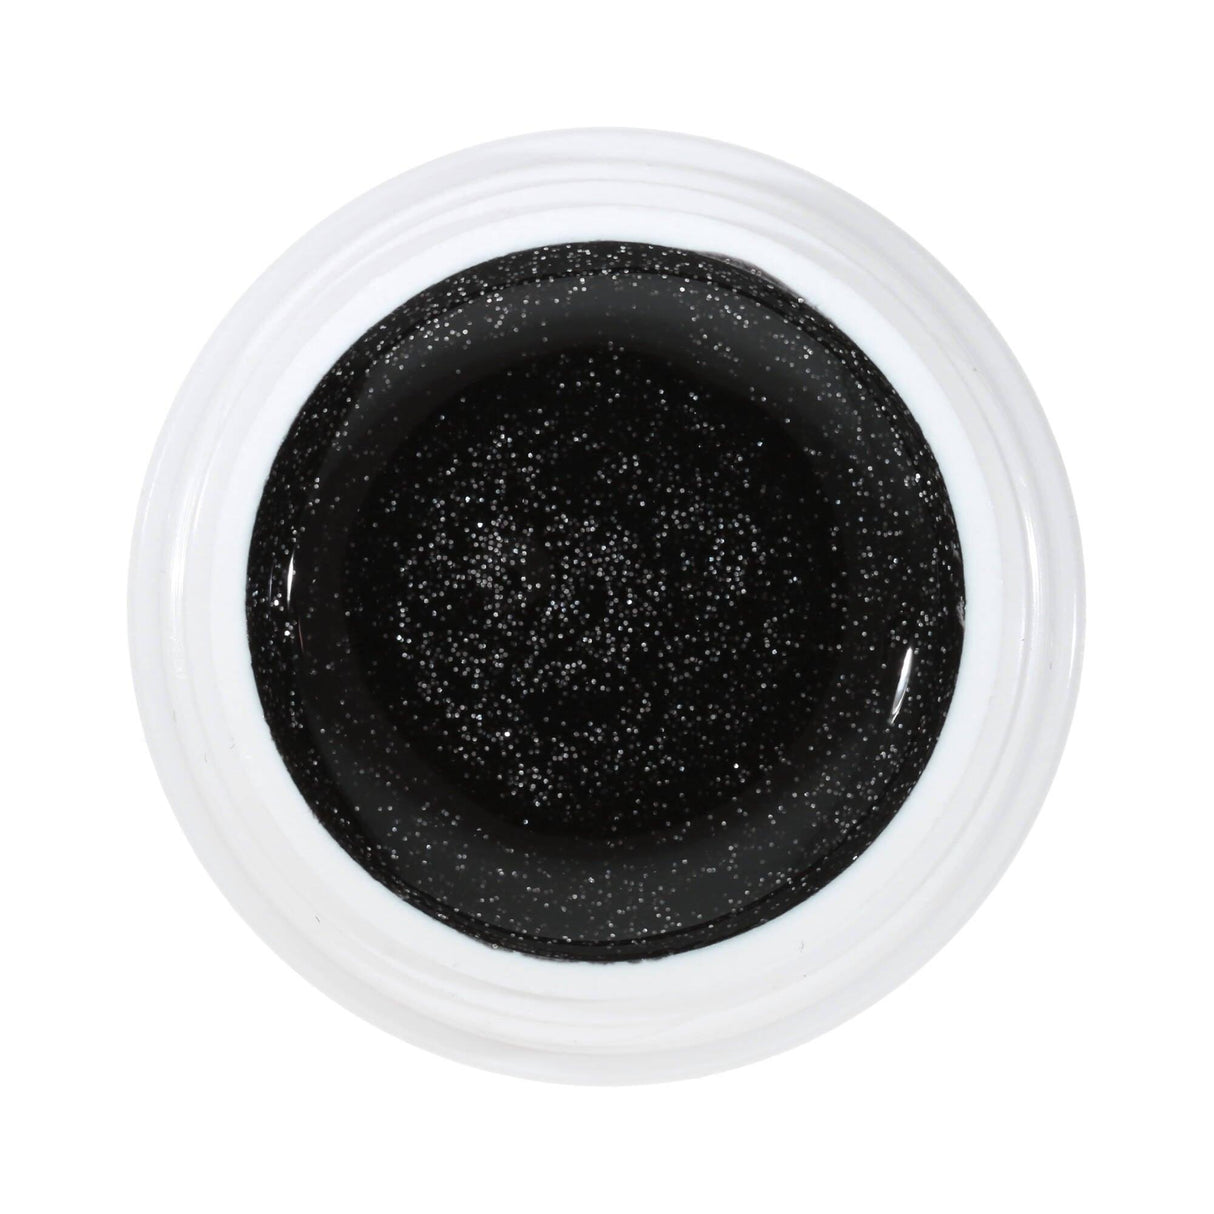 #085 Premium-EFFEKT Color Gel 5ml Schwarz mit ausgeprägtem Silberglitter - MSE - The Beauty Company